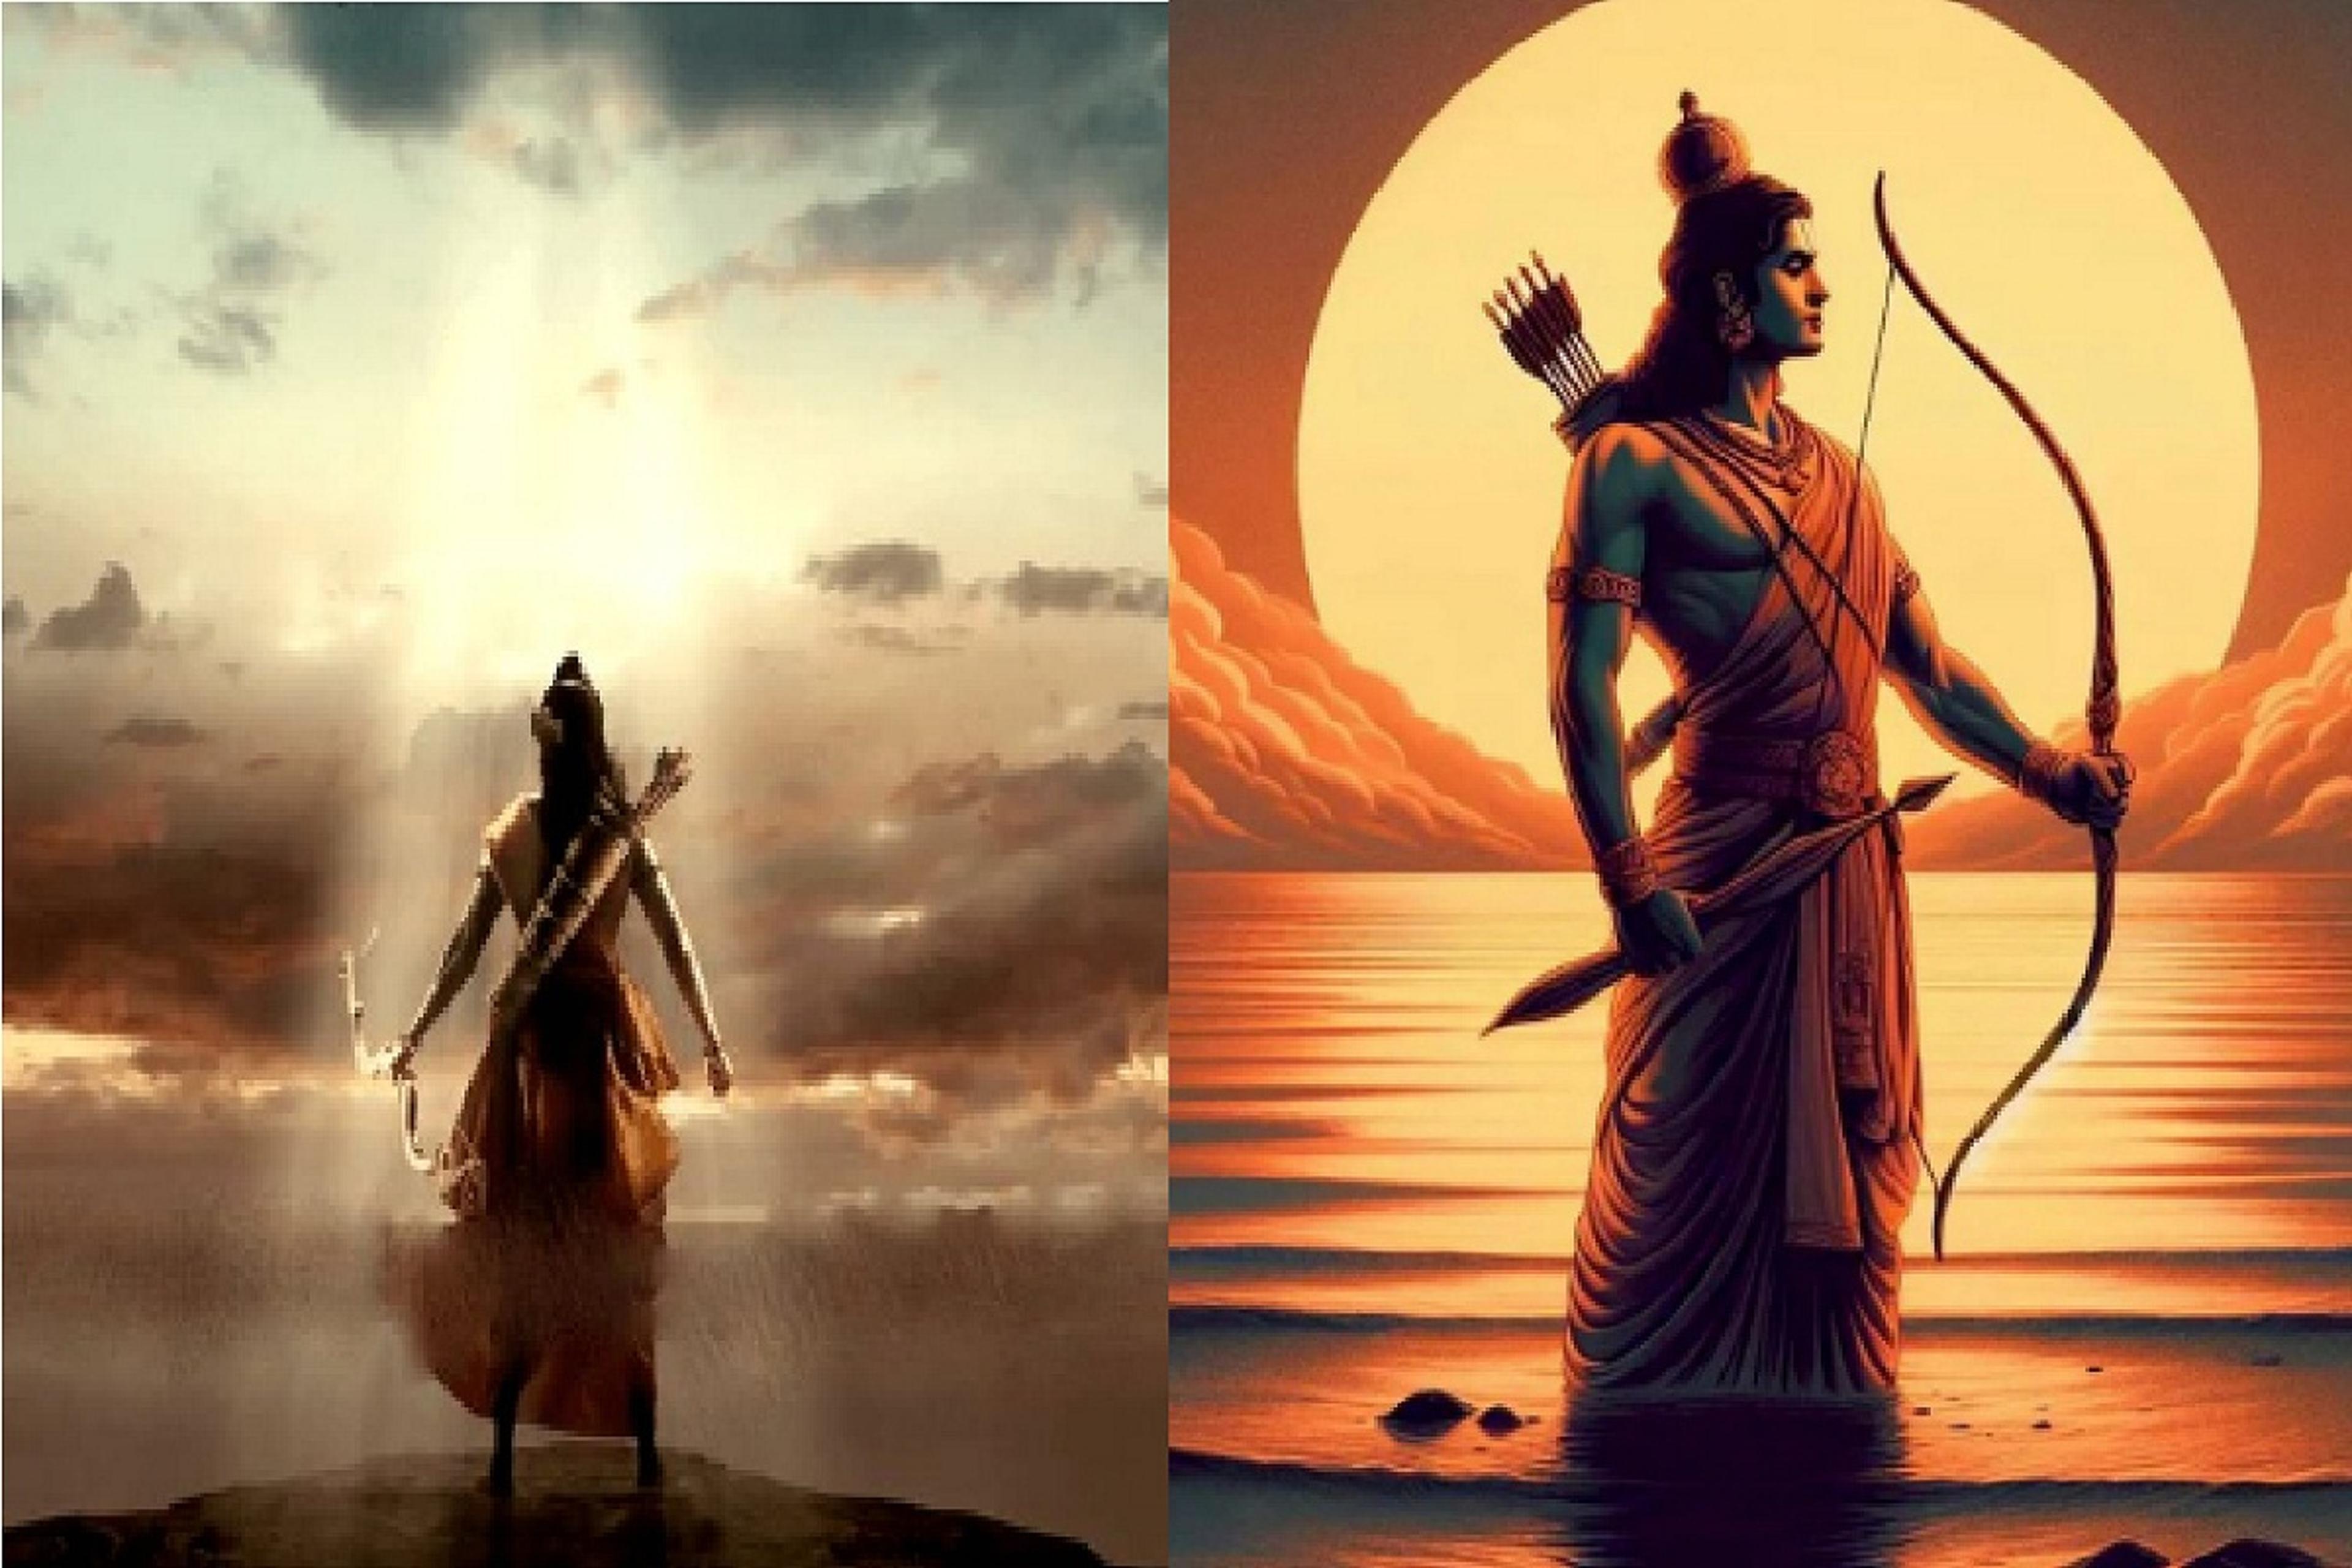 प्रभु राम पर बनेगी फिल्म, जहां – जहां पड़े रघुनंदन के पांव वहां होगी शूटिंग…
बस्तर रहेगा सबसे खास